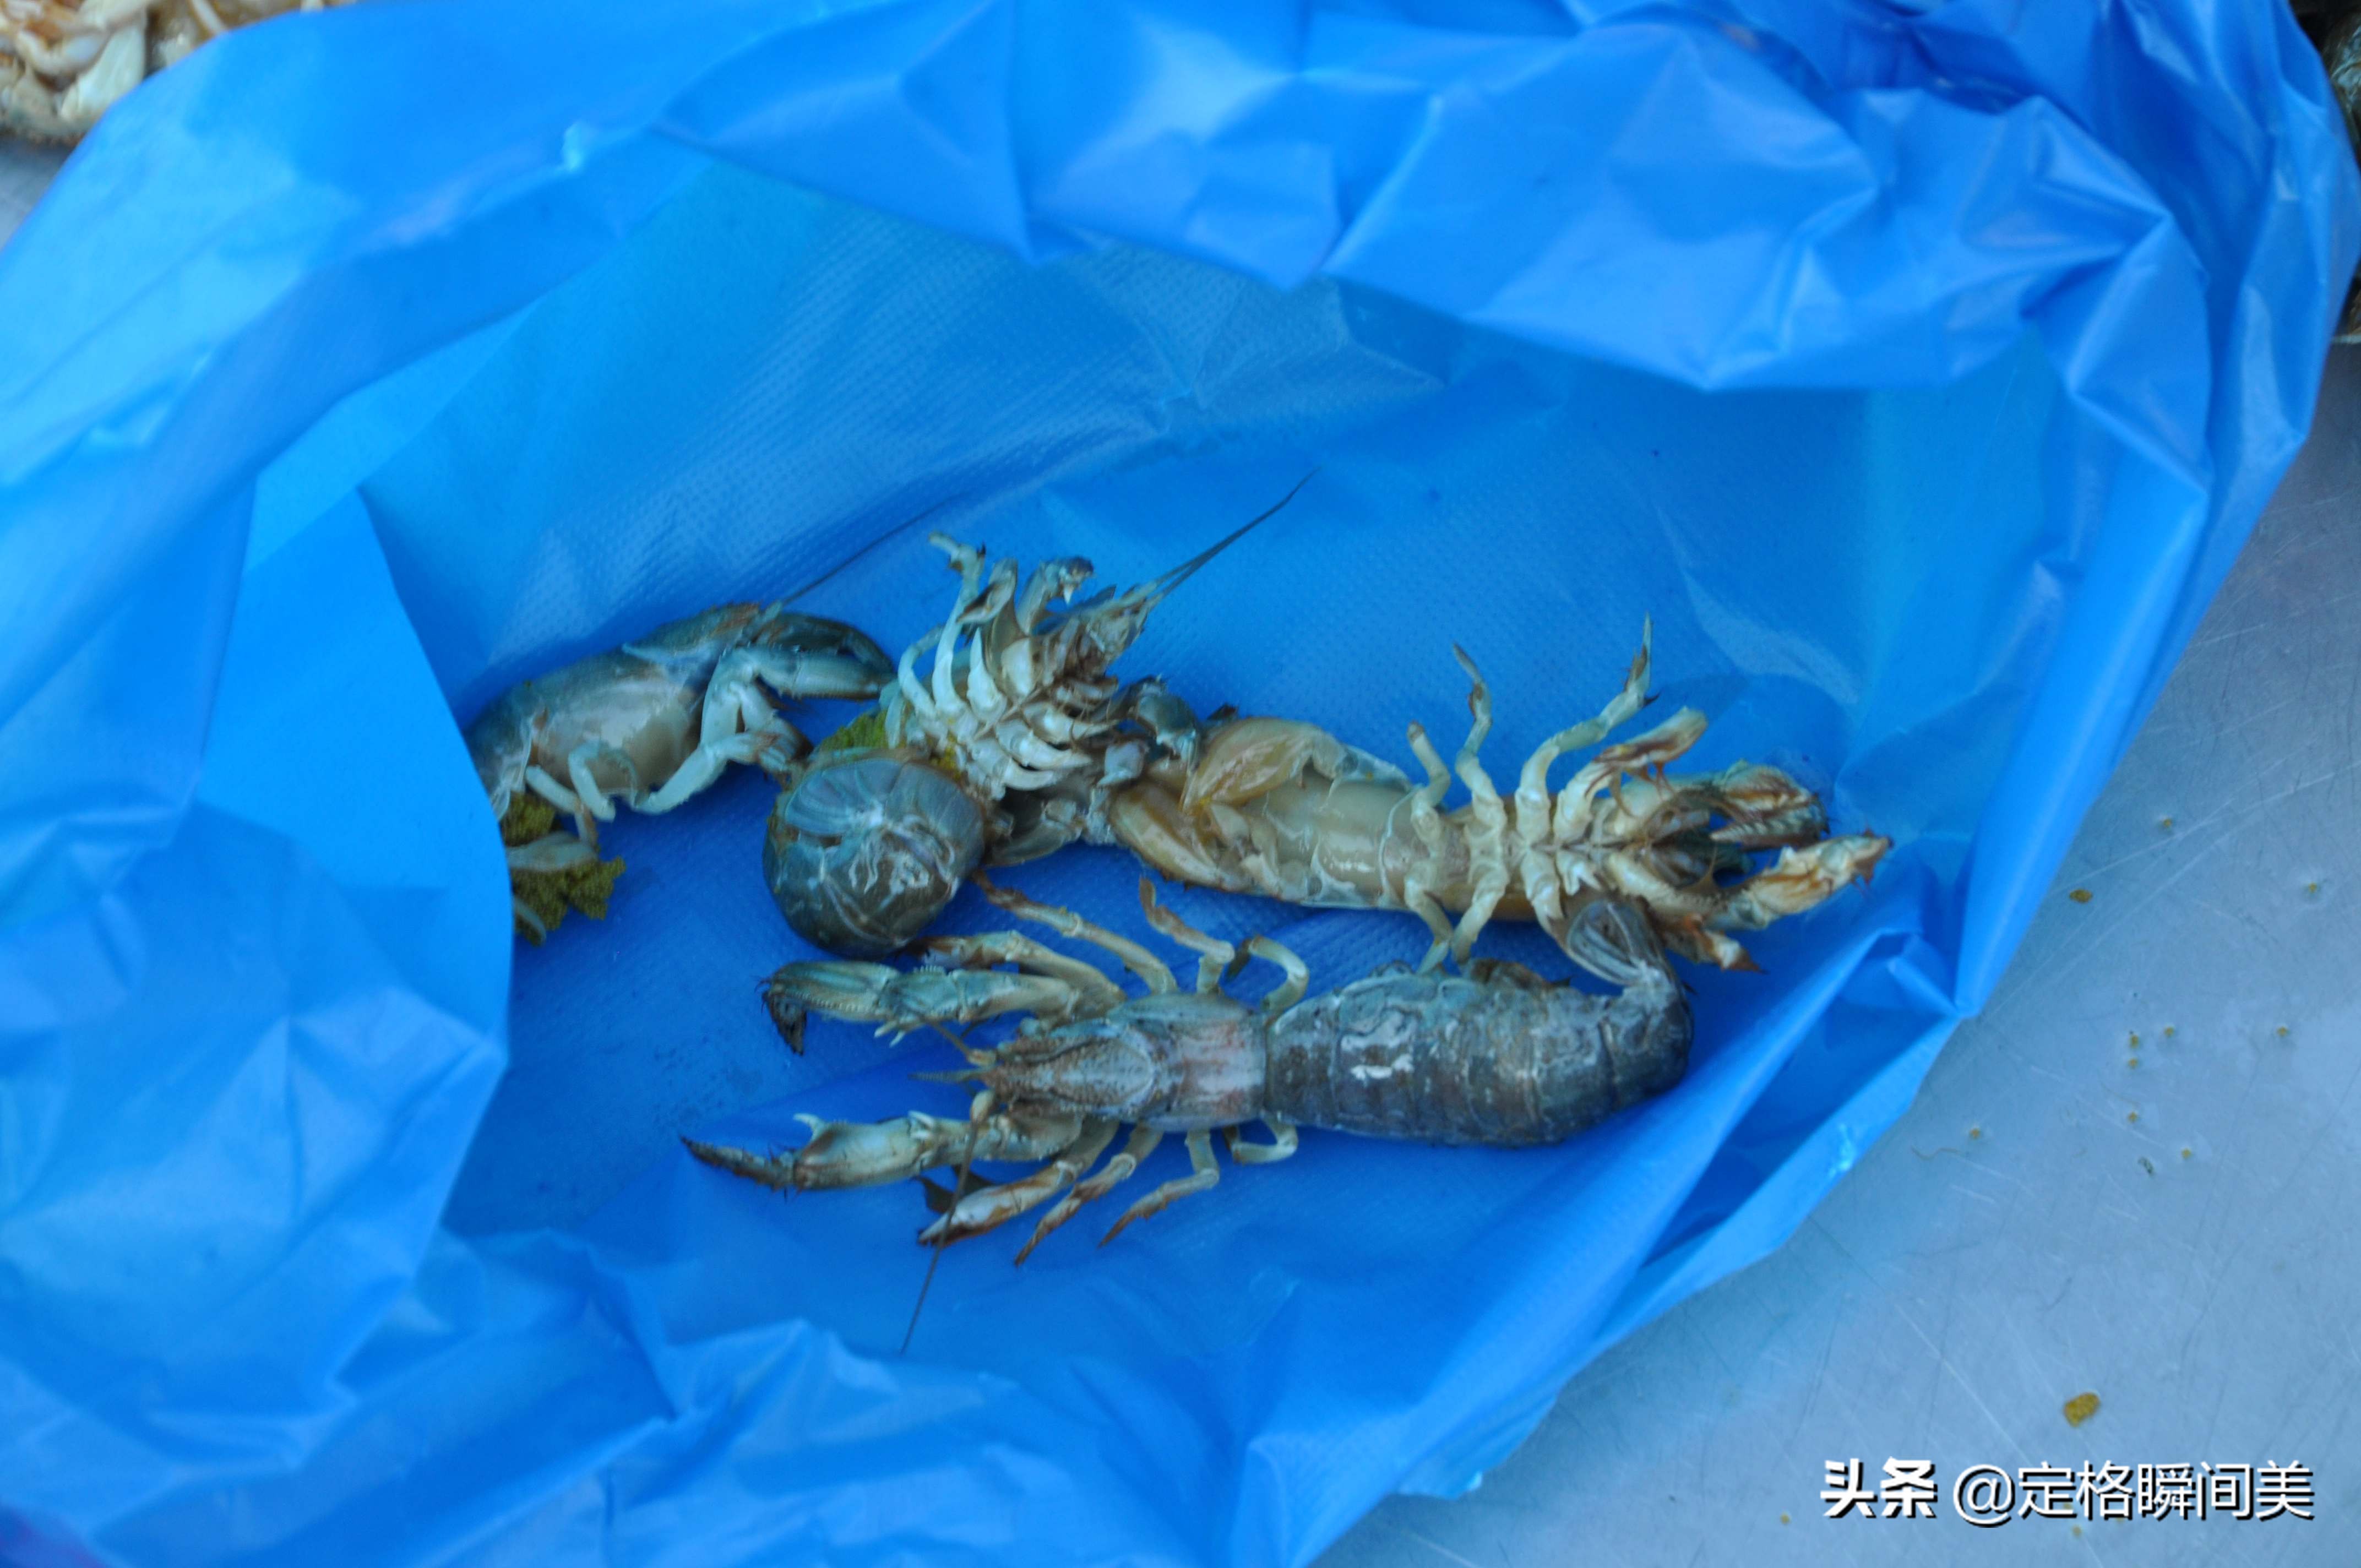 青岛早市新鲜土特产海蜂子50元2斤 小伙经营有道一斤赚双份钱